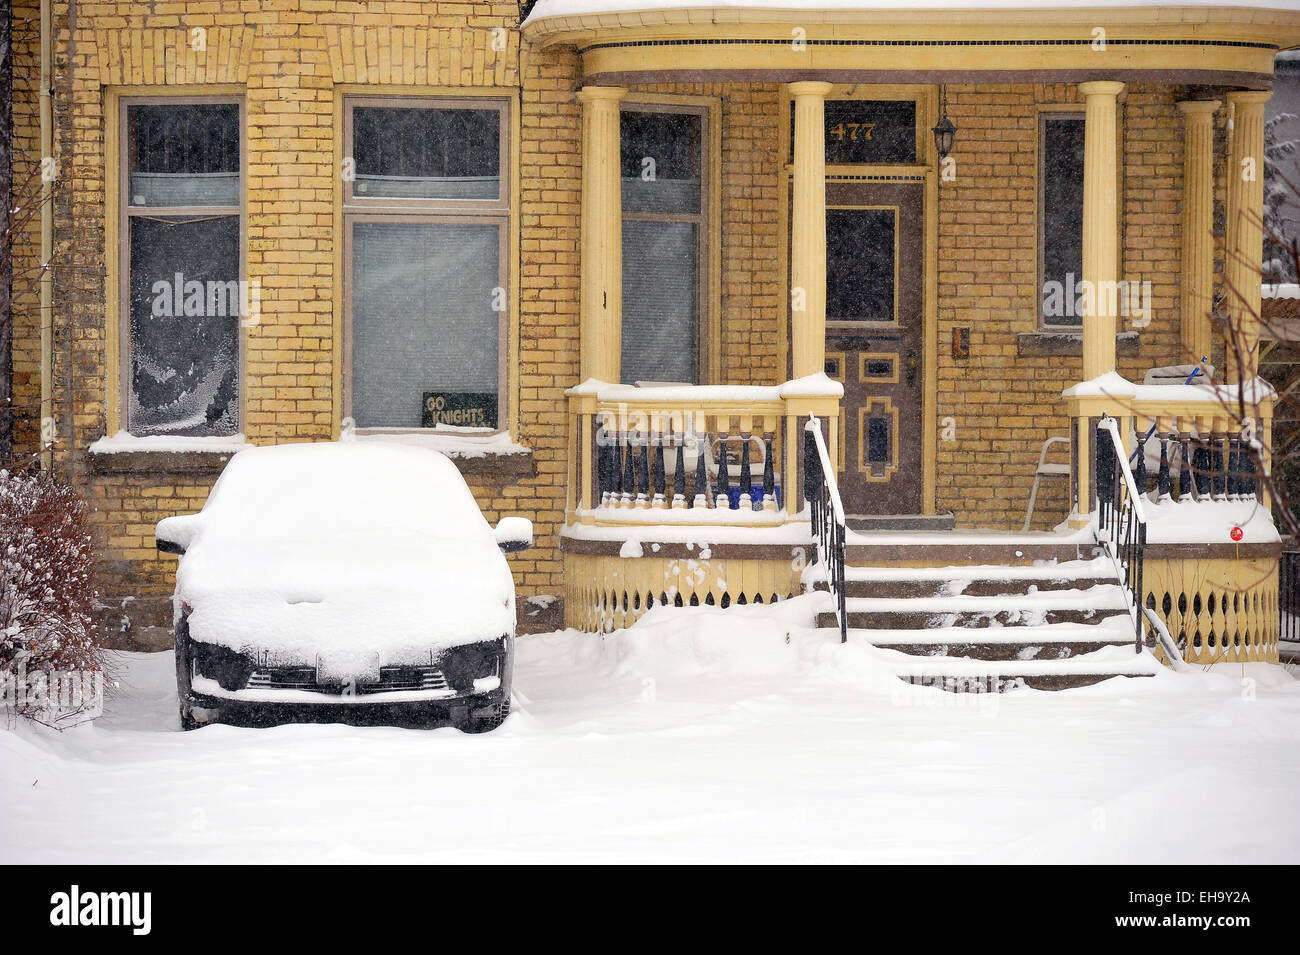 Schneeräumung von Schnee bedeckte Auffahrt und Auto Stockfotografie - Alamy